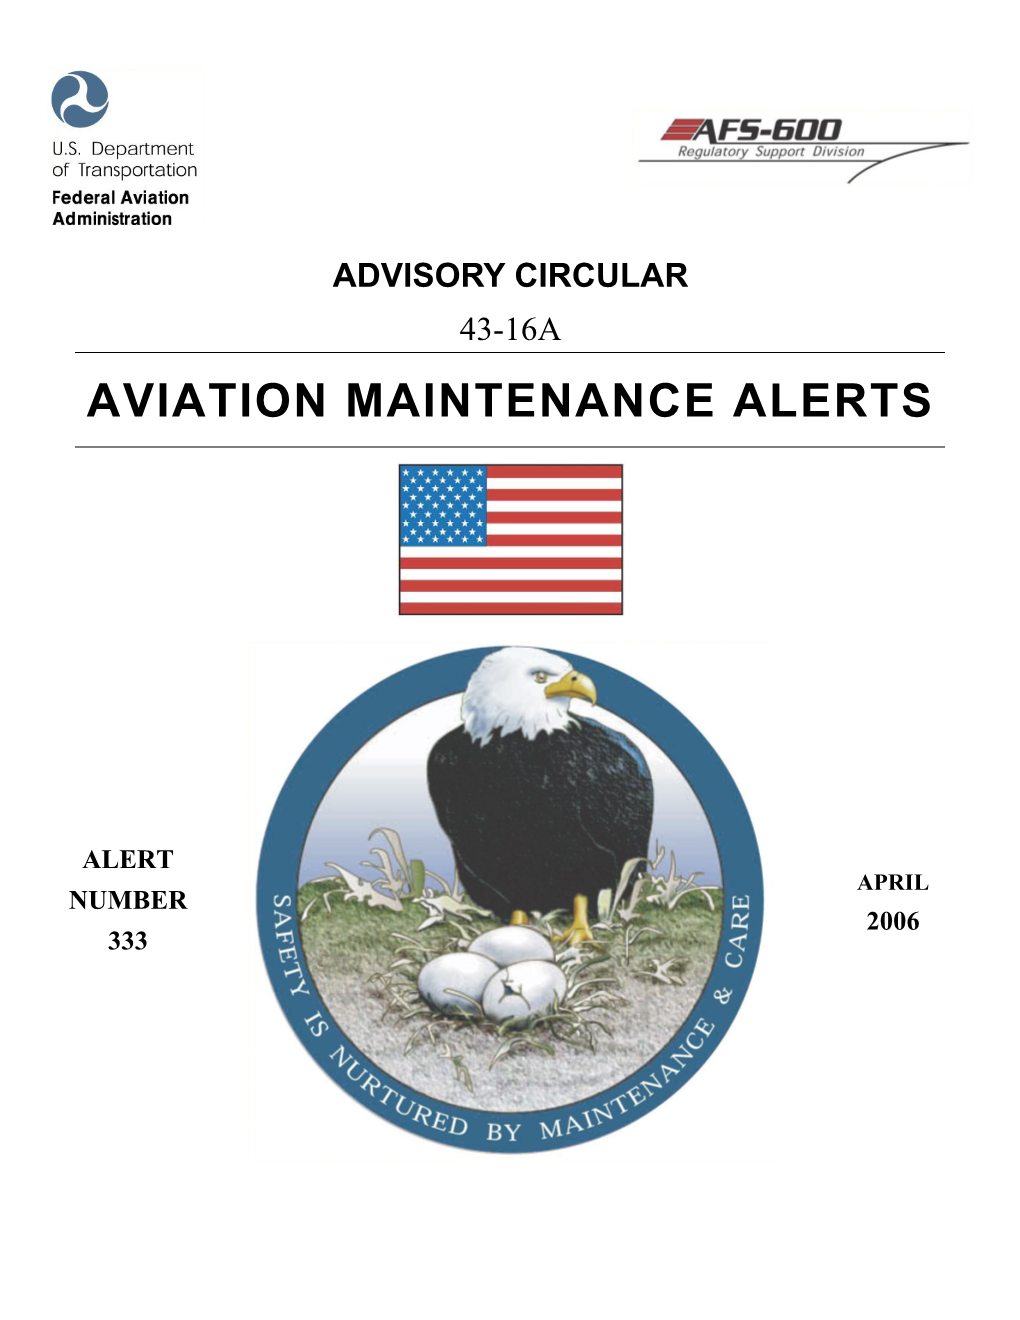 Aviation Maintenance Alerts Alert Number